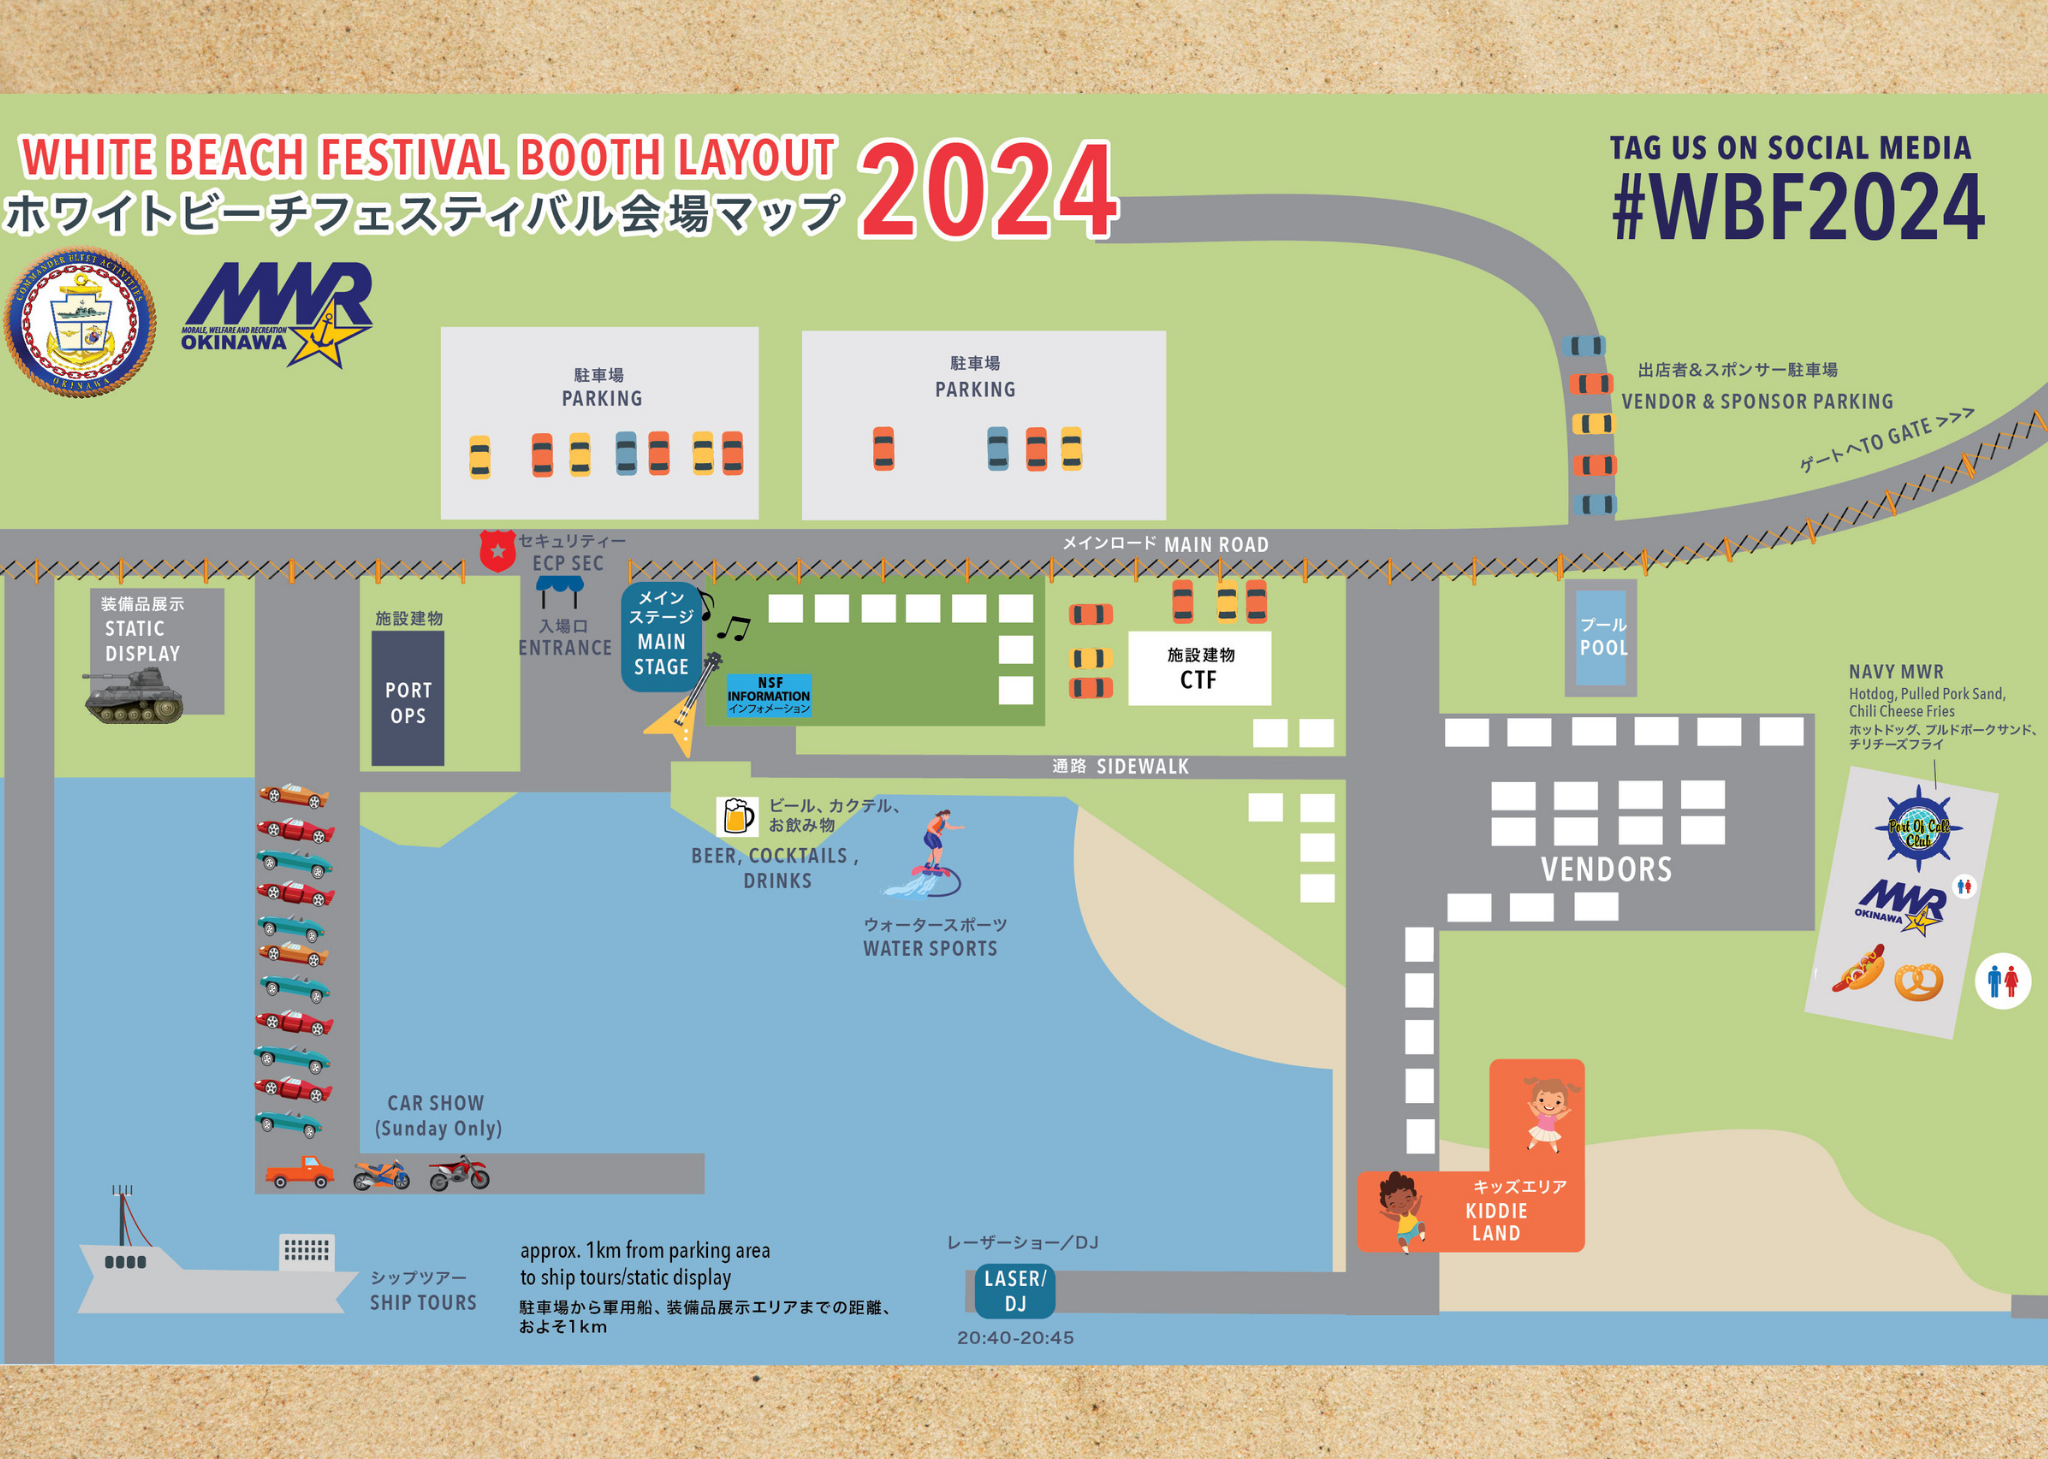 ホワイトビーチフェスティバル2024の会場マップ